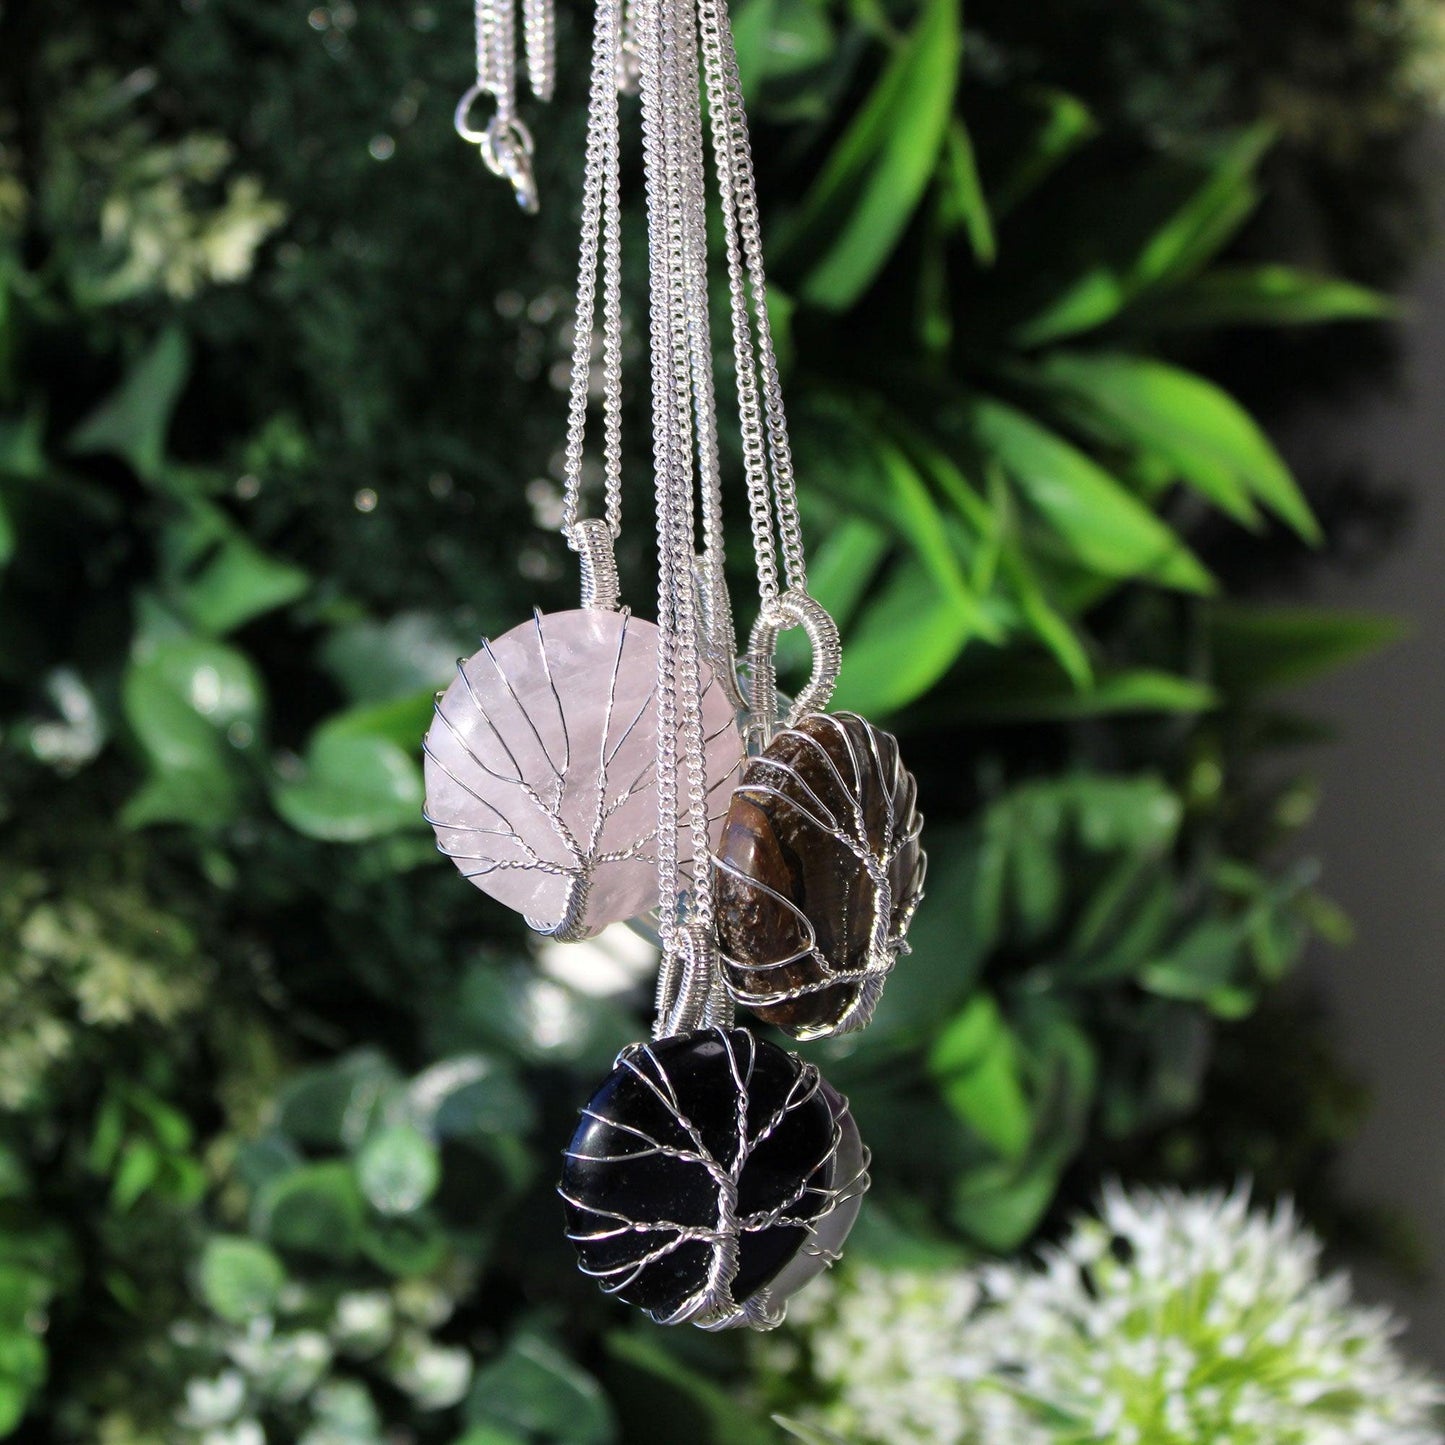 Tree of Life Gemstone Necklace - Black Onyx - DuvetDay.co.uk